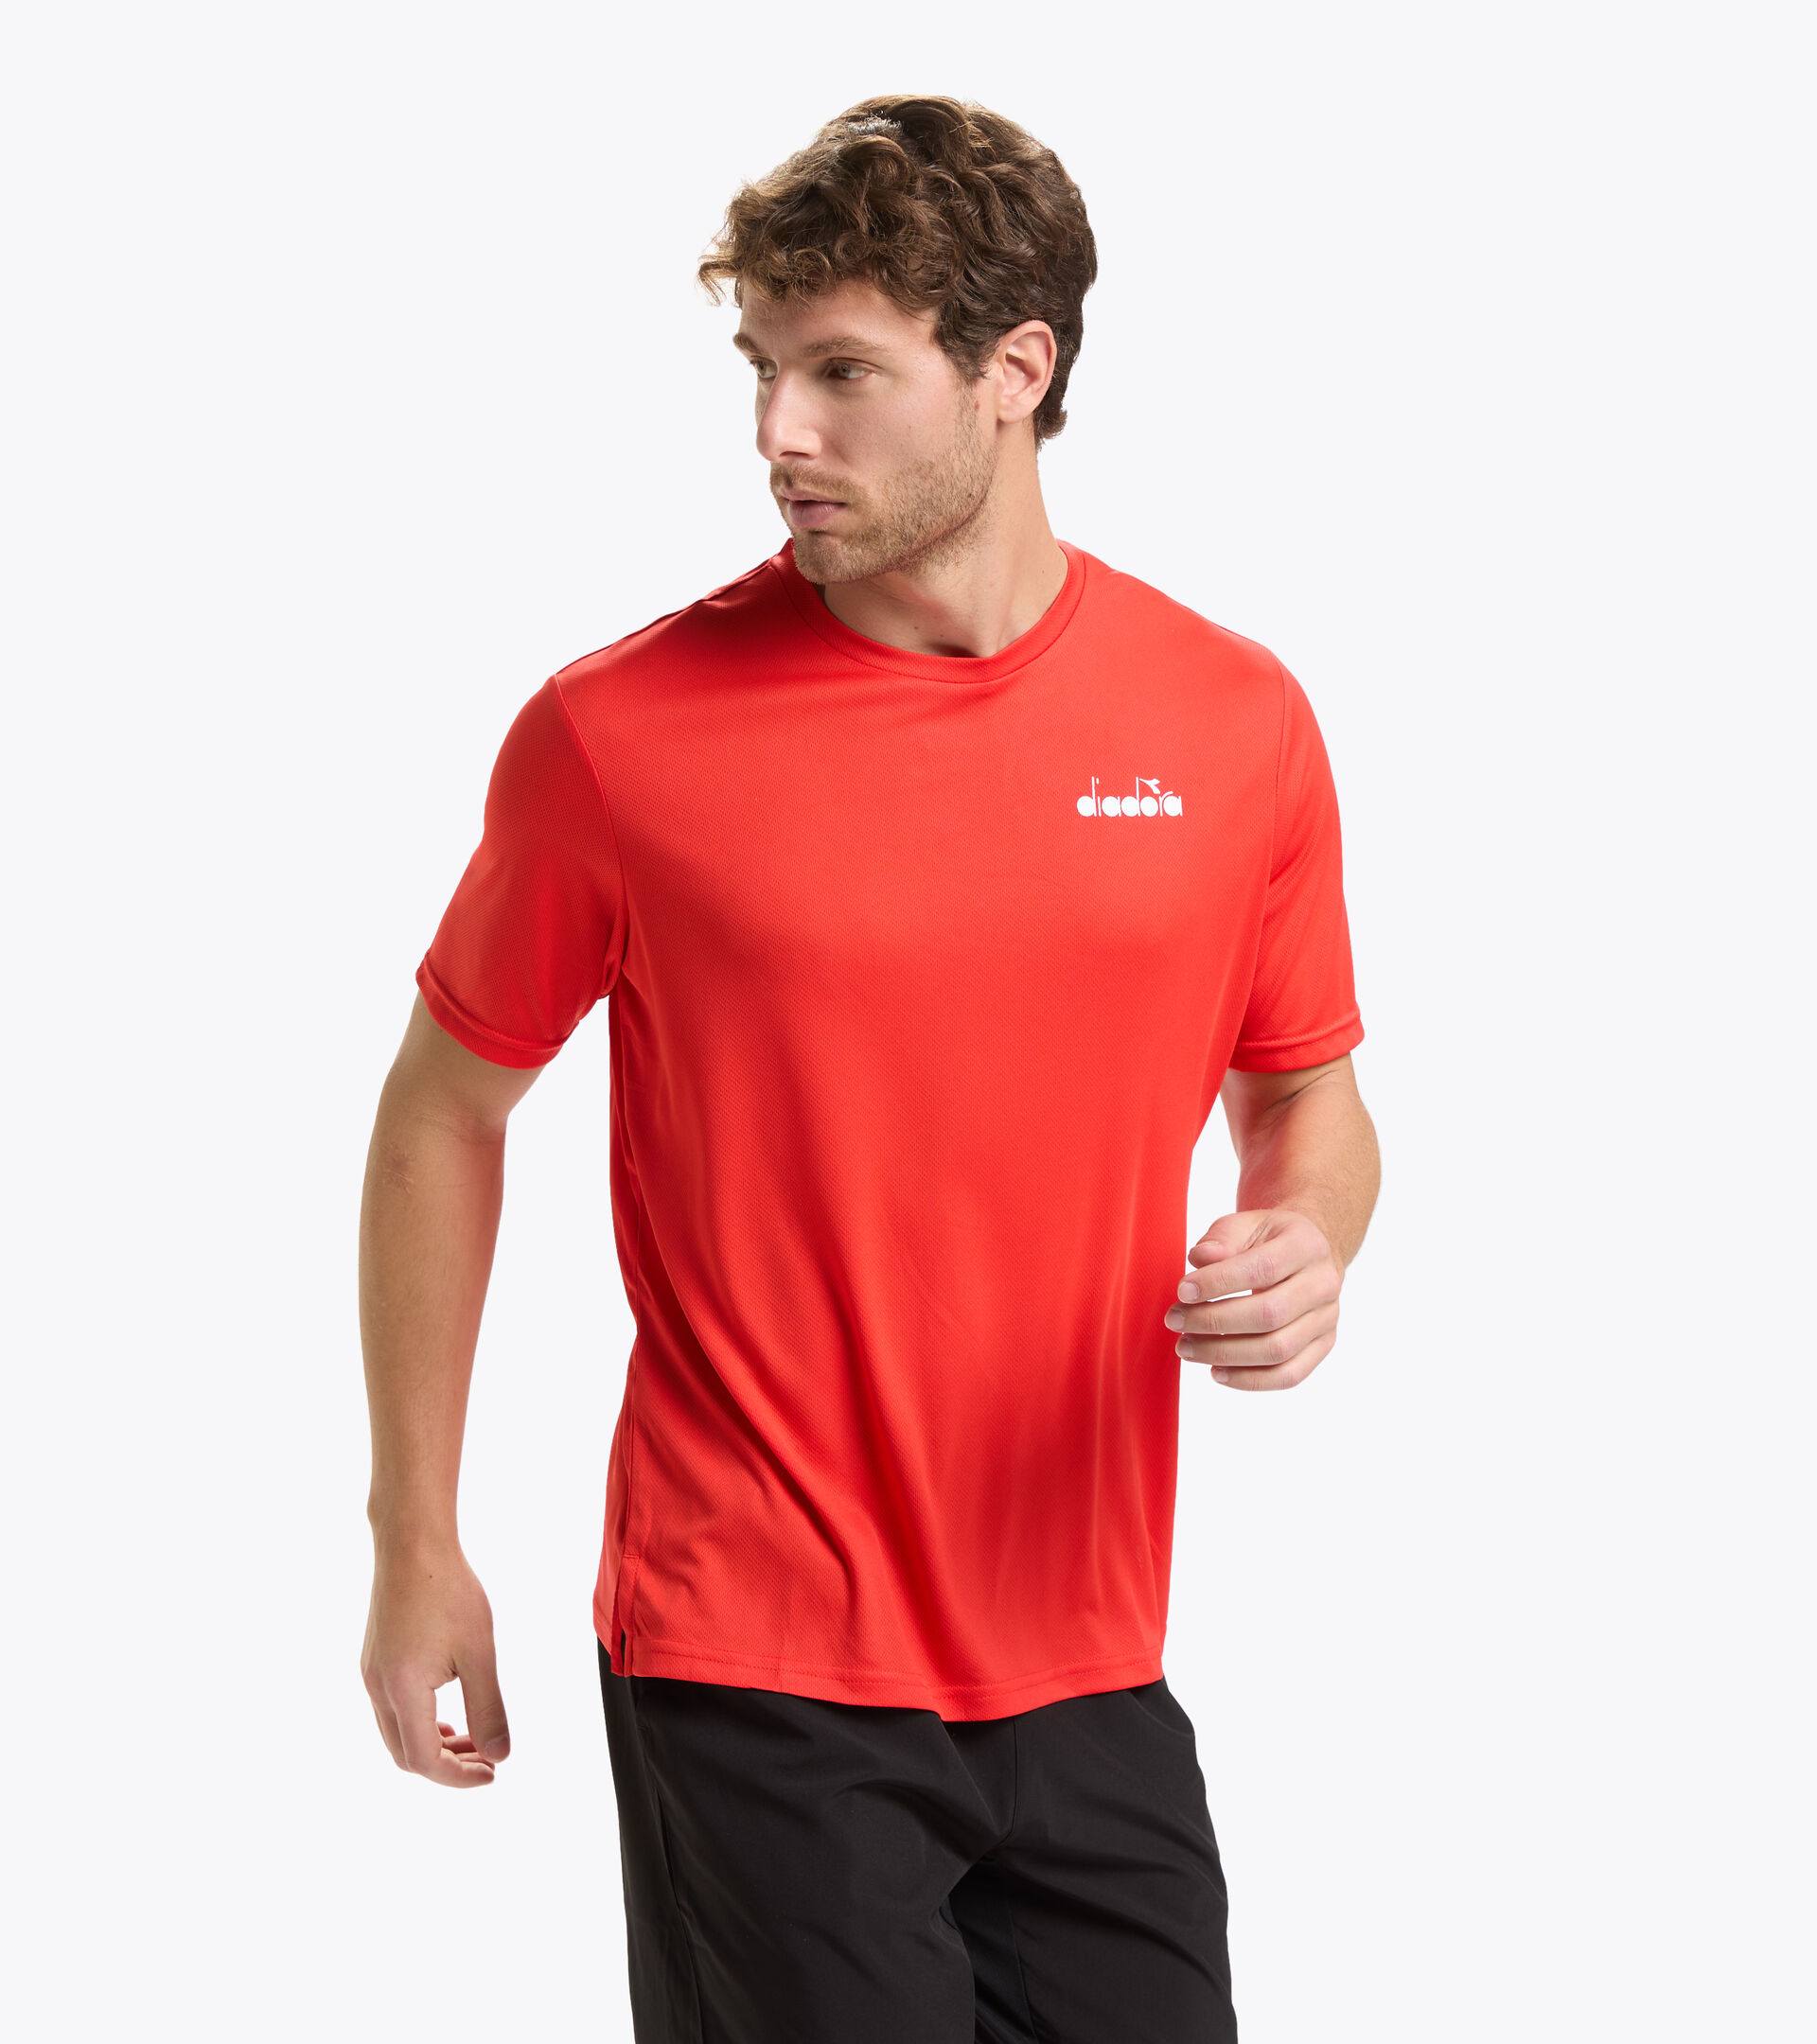 vermogen Winderig Handig SS CORE T-SHIRT T Short-sleeved tennis T-shirt - Men - Diadora Online Store  US